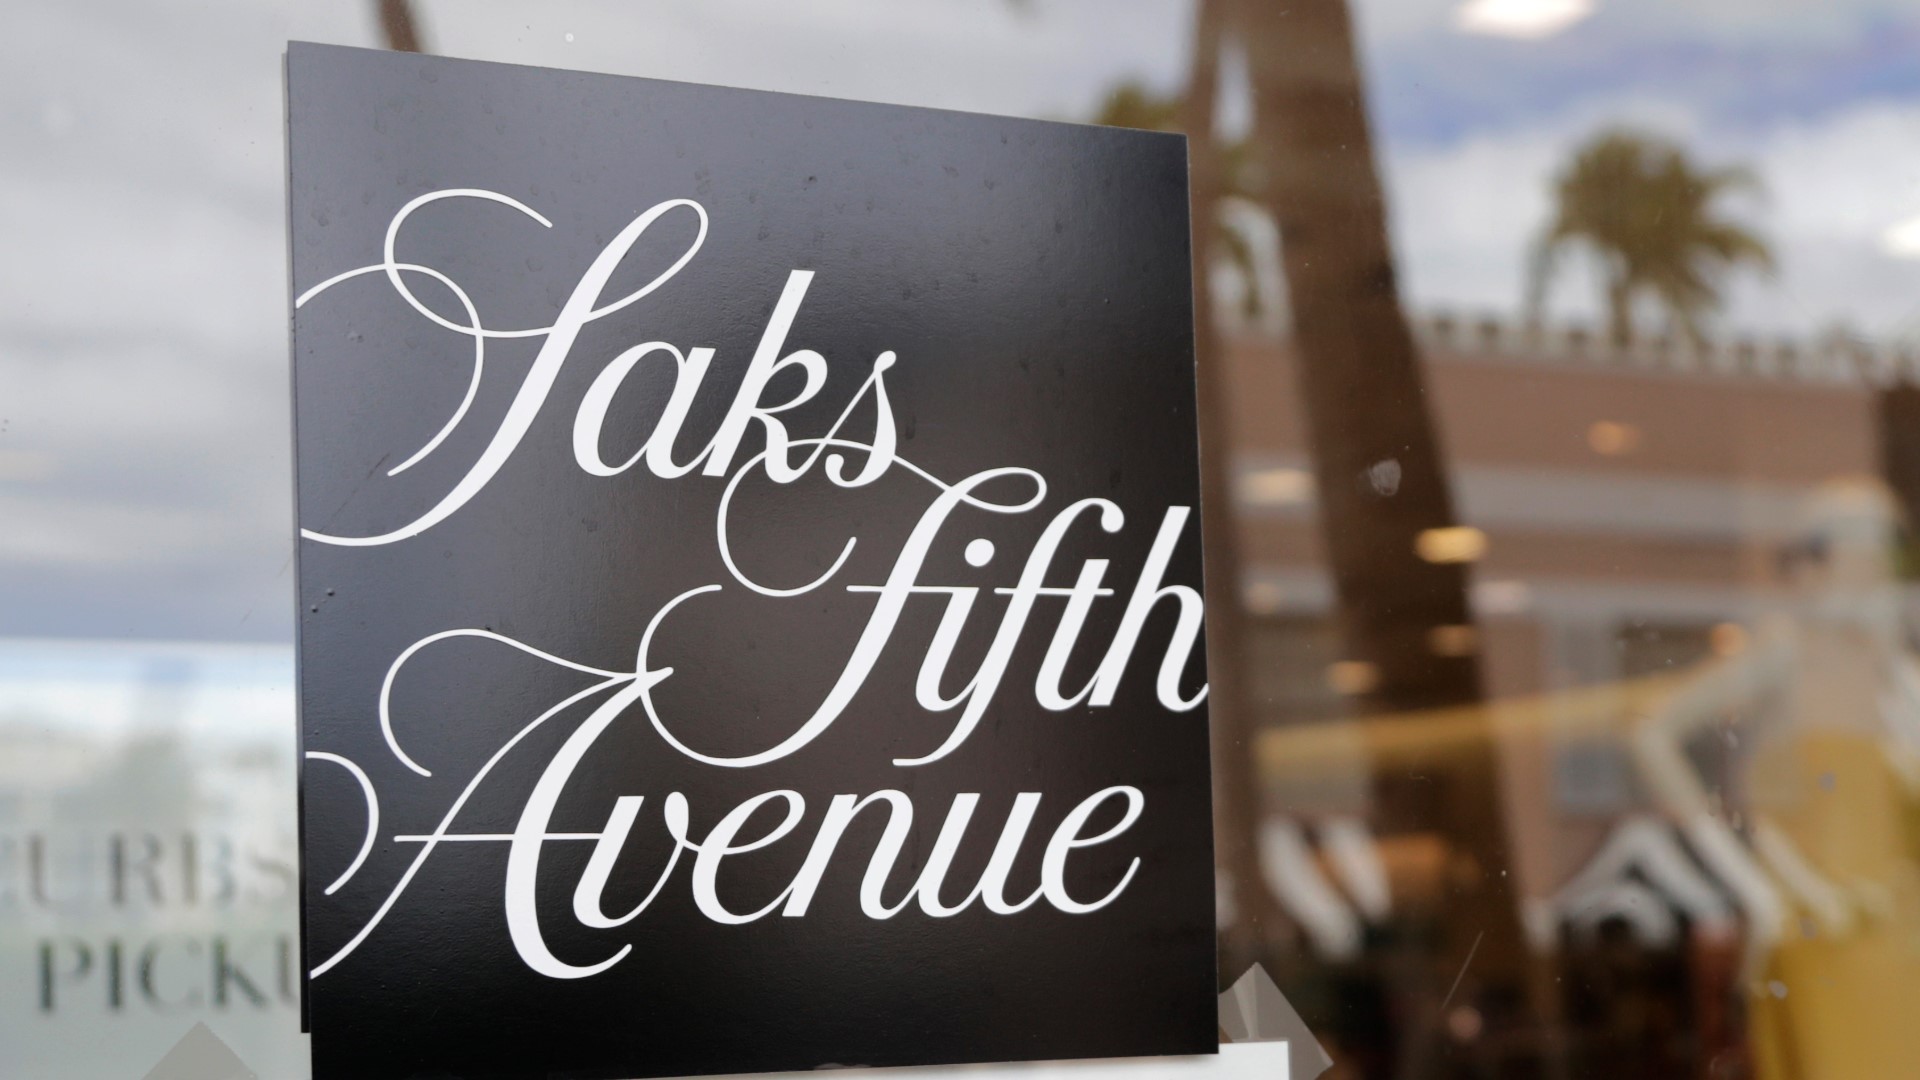 Saks Fifth Avenue to go fur-free | newscentermaine.com